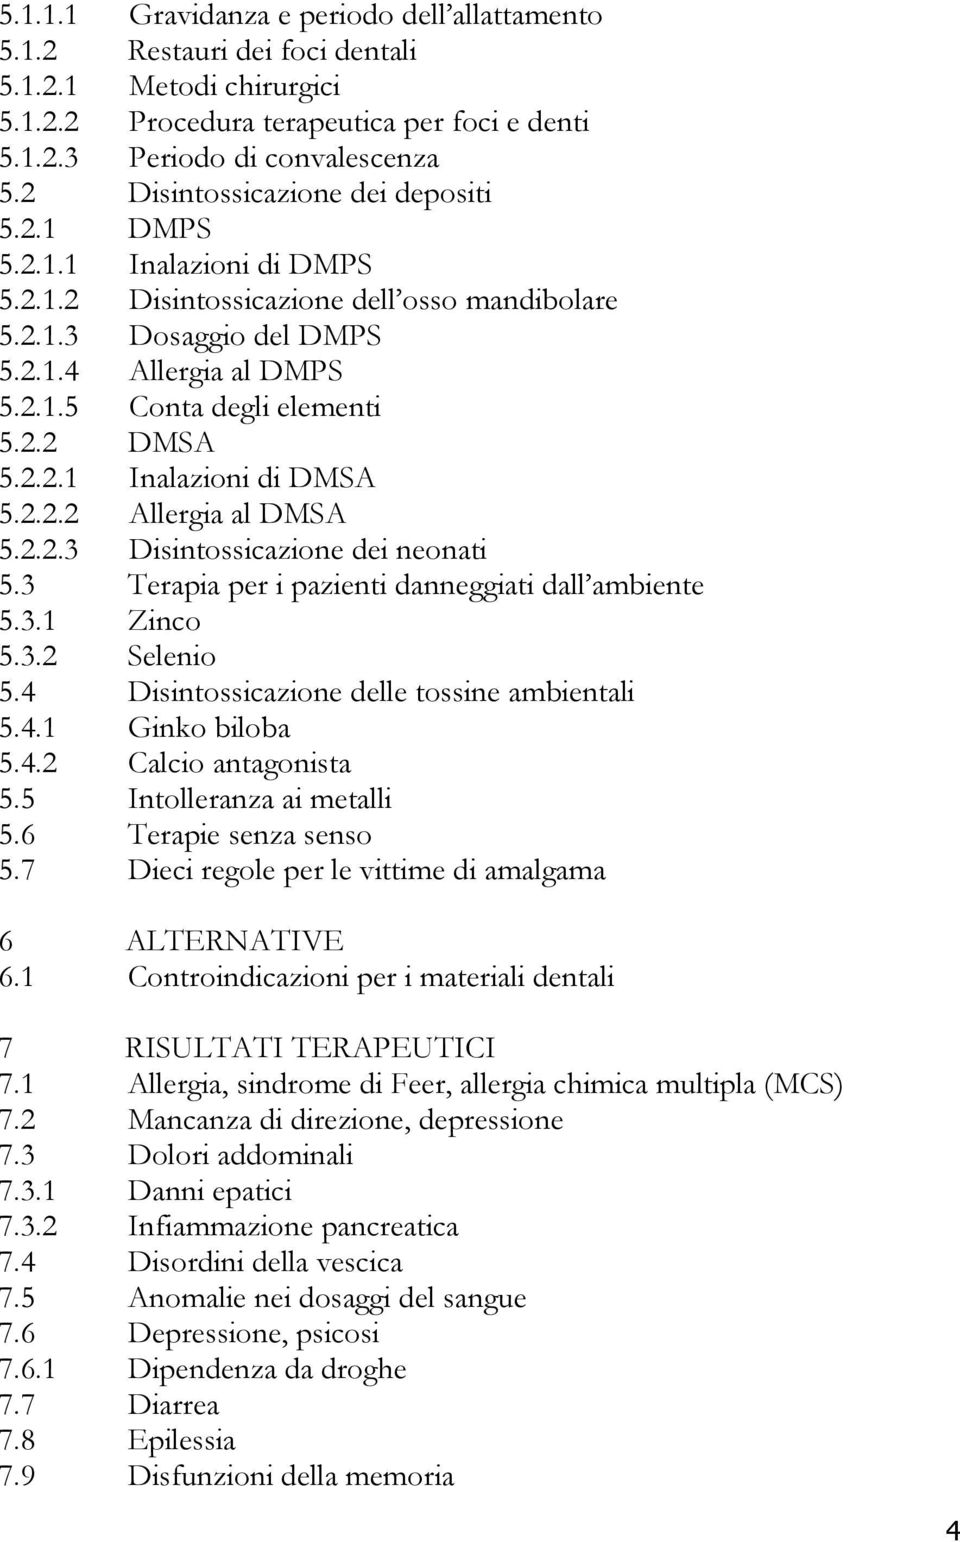 2.2 DMSA 5.2.2.1 Inalazioni di DMSA 5.2.2.2 Allergia al DMSA 5.2.2.3 Disintossicazione dei neonati 5.3 Terapia per i pazienti danneggiati dall ambiente 5.3.1 Zinco 5.3.2 Selenio 5.